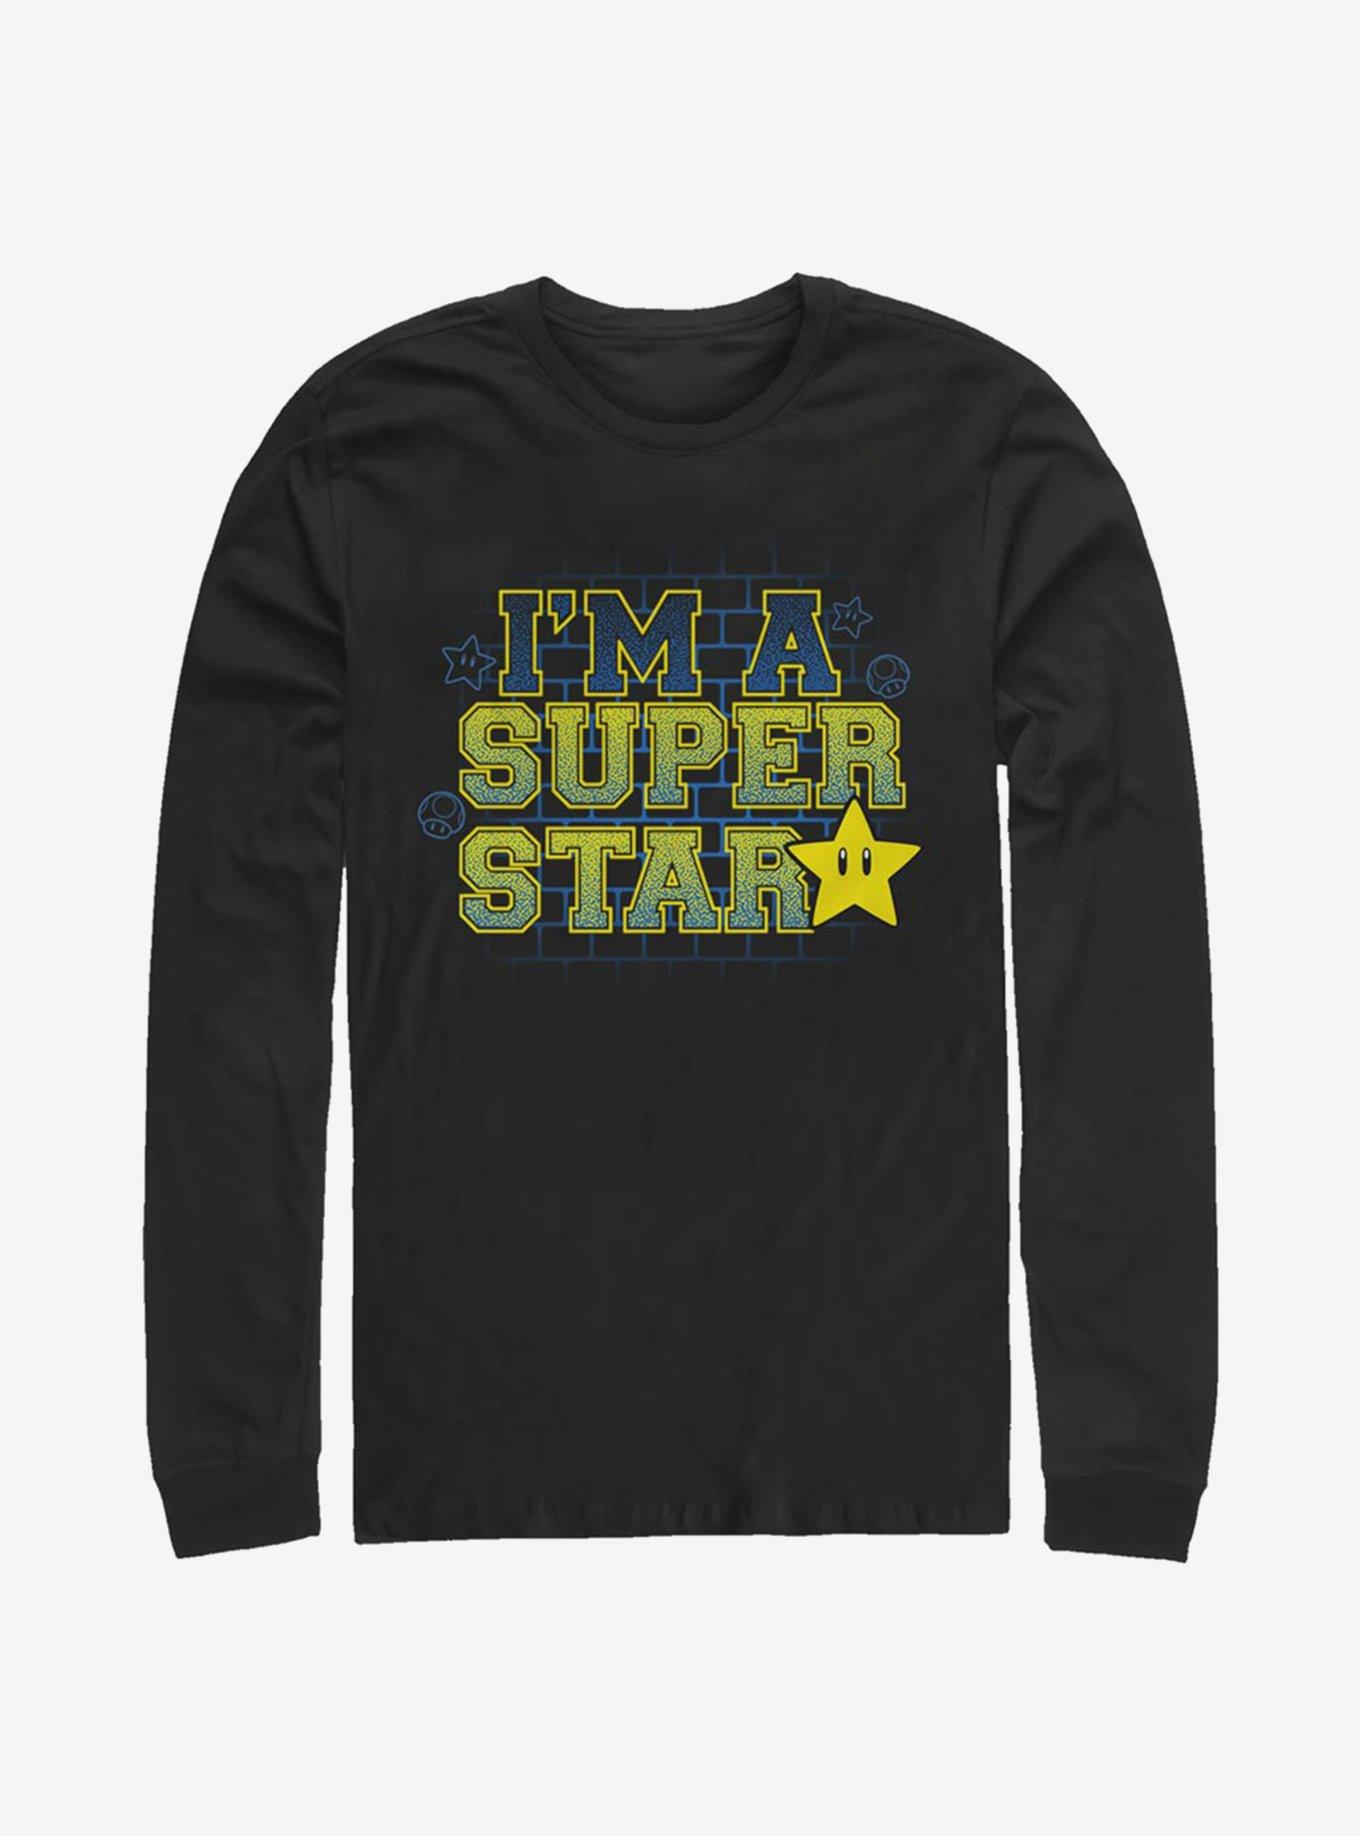 Super Mario Super Star Long-Sleeve T-Shirt, BLACK, hi-res